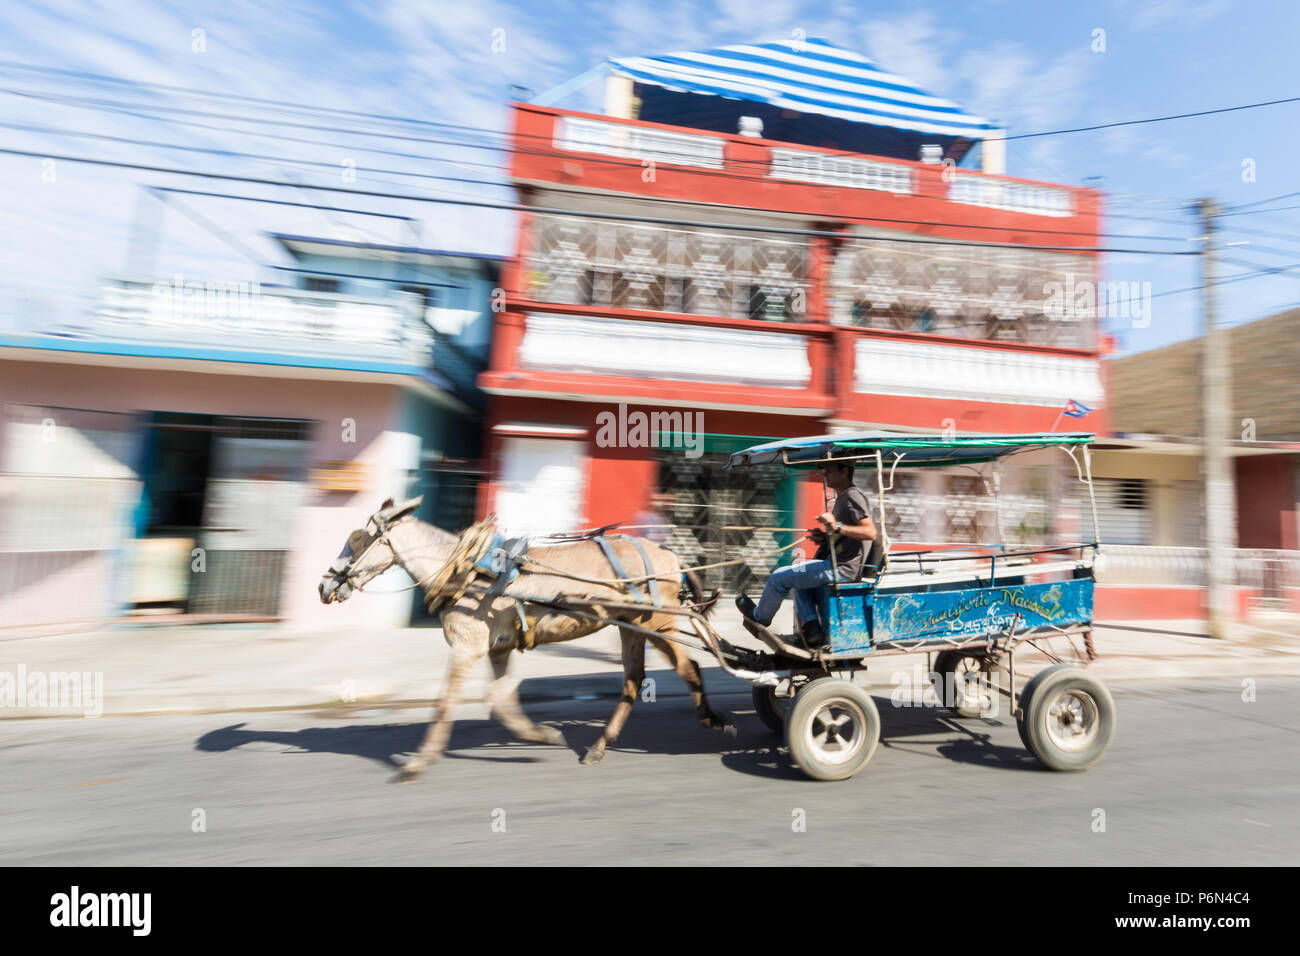 Ein Pferdefuhrwerk lokal bekannt als Coche in Cienfuegos, Kuba. Stockfoto